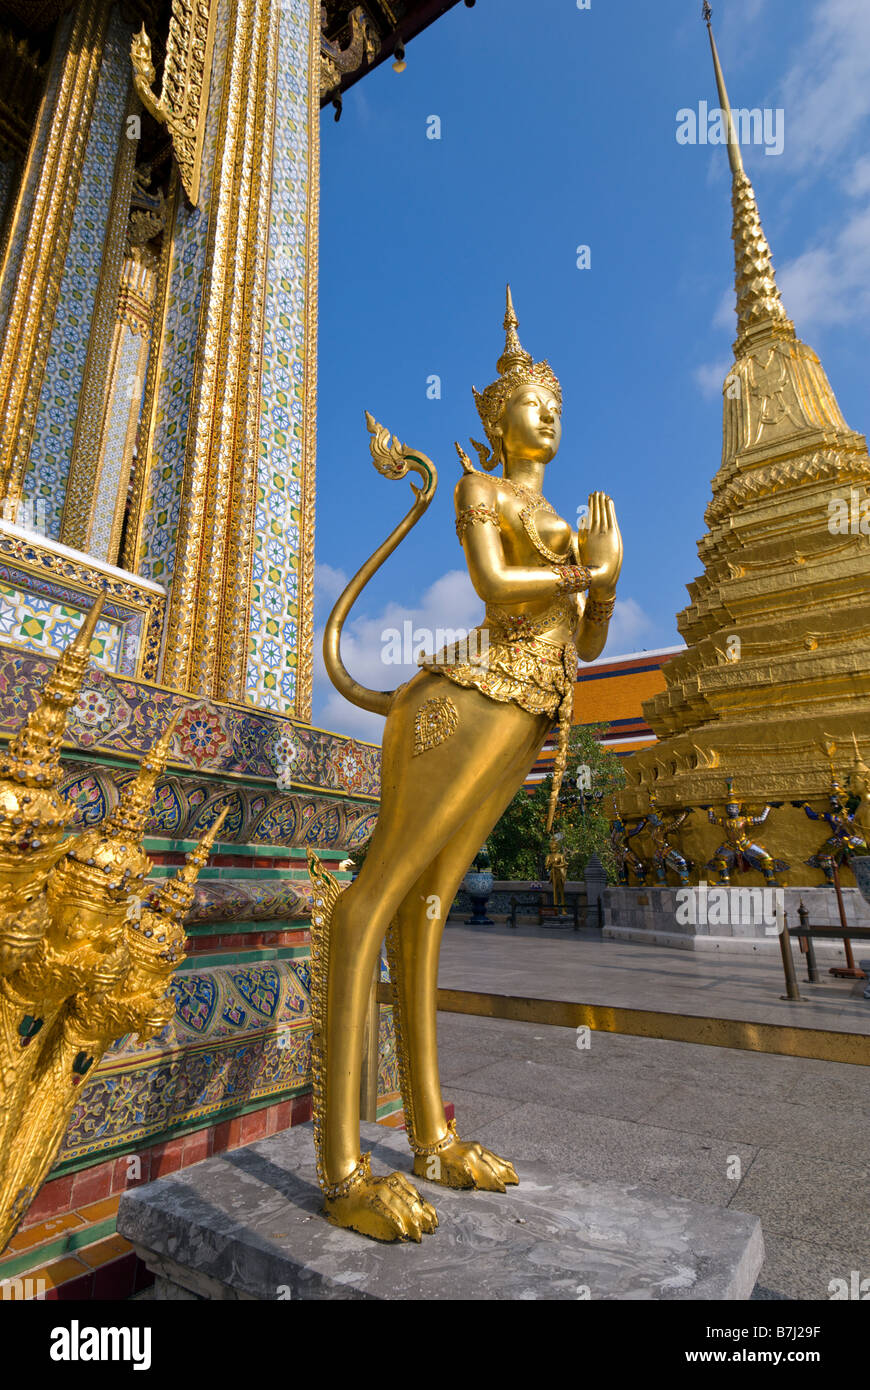 Kinnara doré statue - Wat Phra Kaew et le Grand Palais dans le centre de Bangkok en Thaïlande Banque D'Images